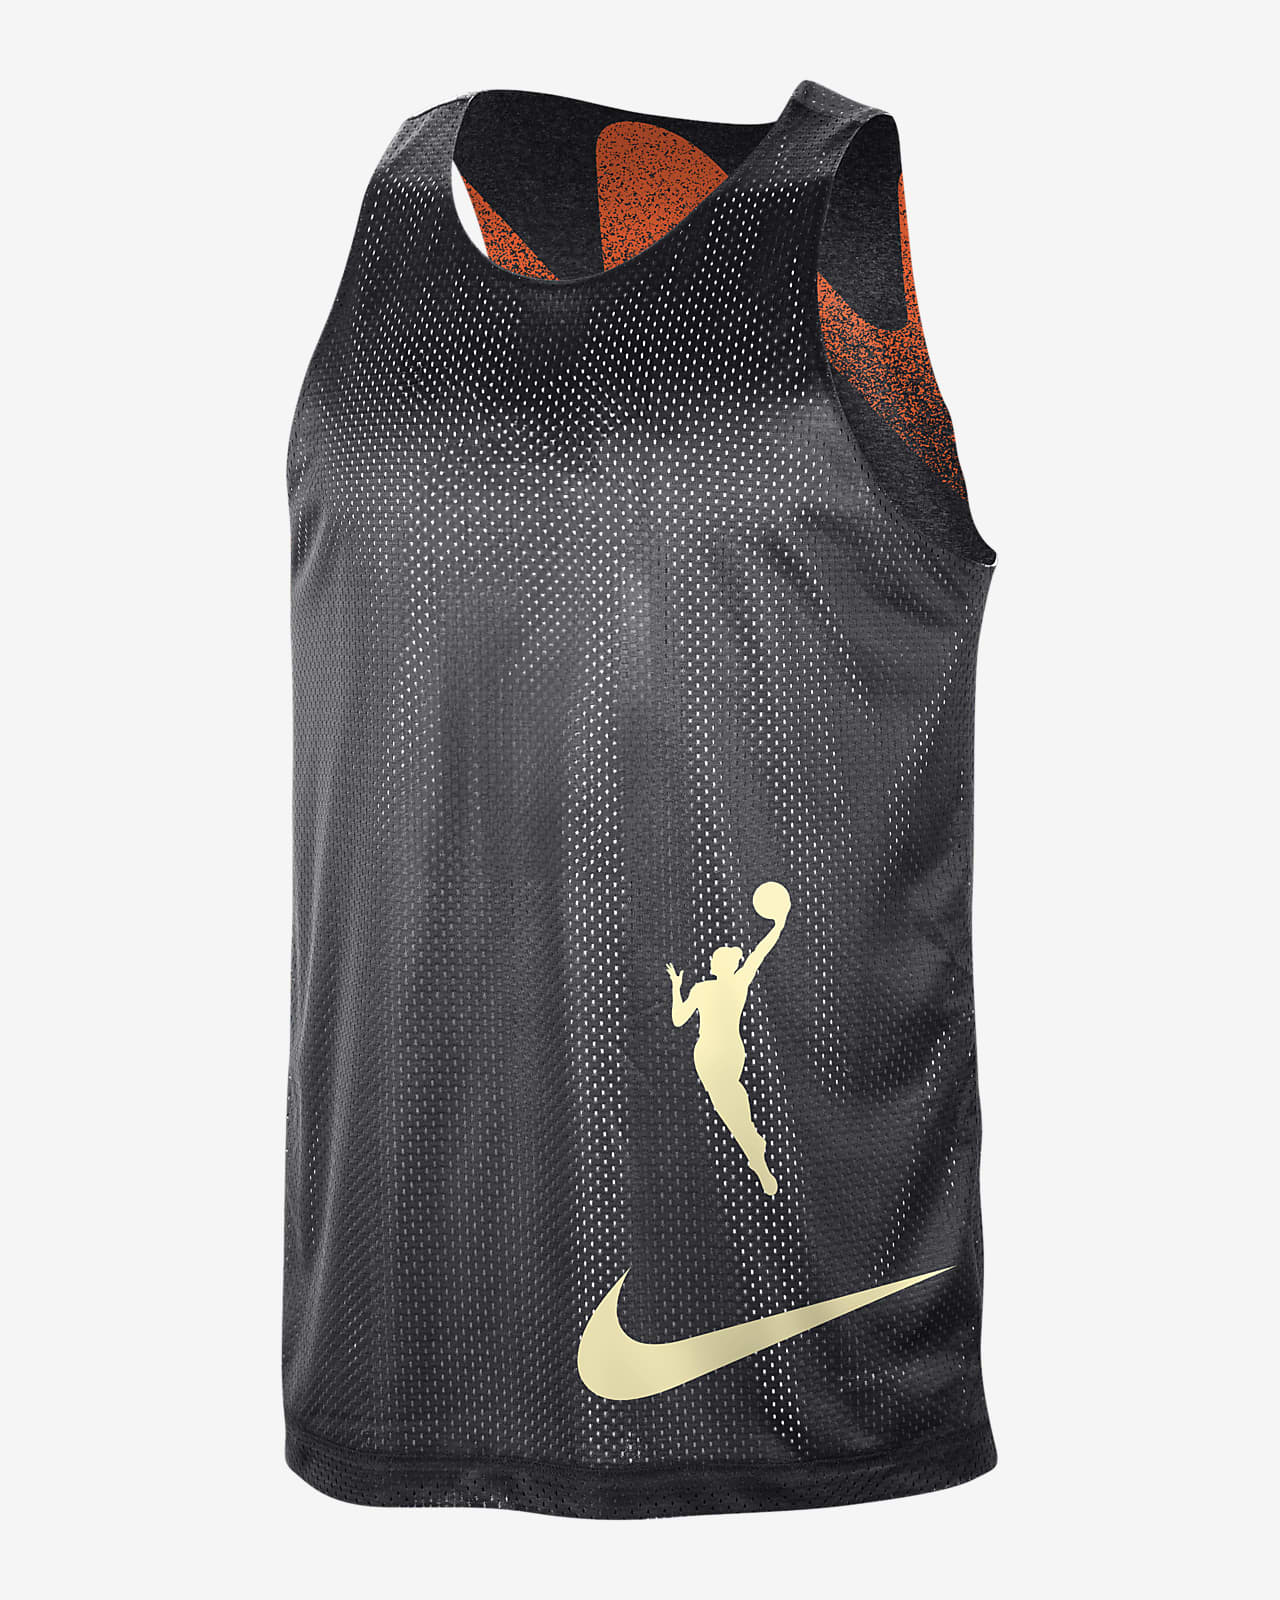 Camiseta de tirantes Nike Dri-FIT de la WNBA para hombre Team 13 Standard Issue